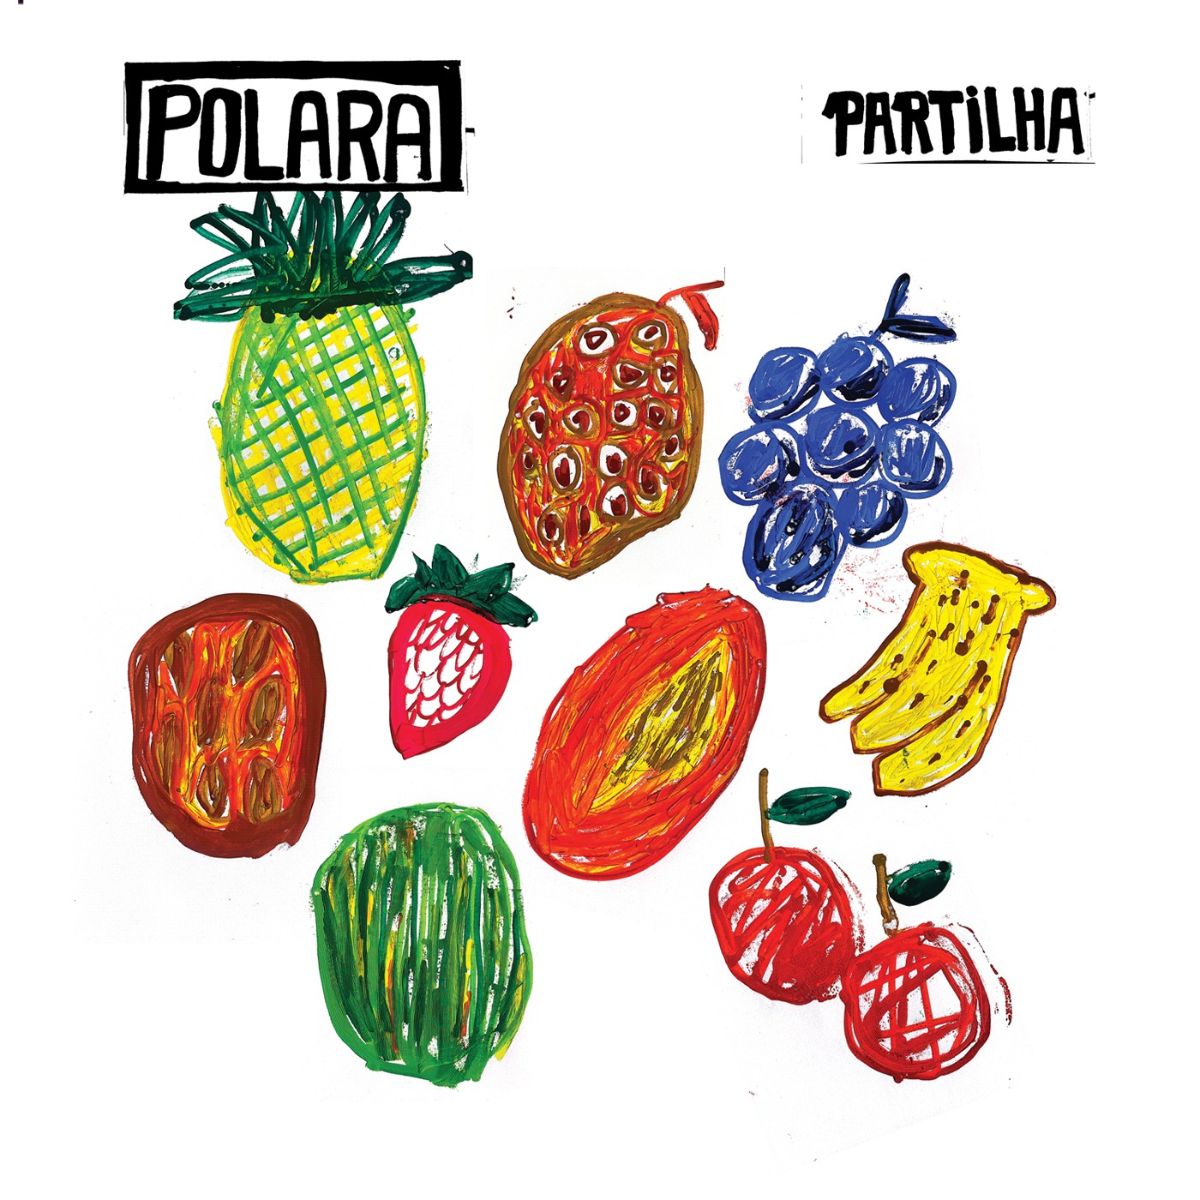 Polara lança “Partilha”, terceiro álbum de estúdio da banda